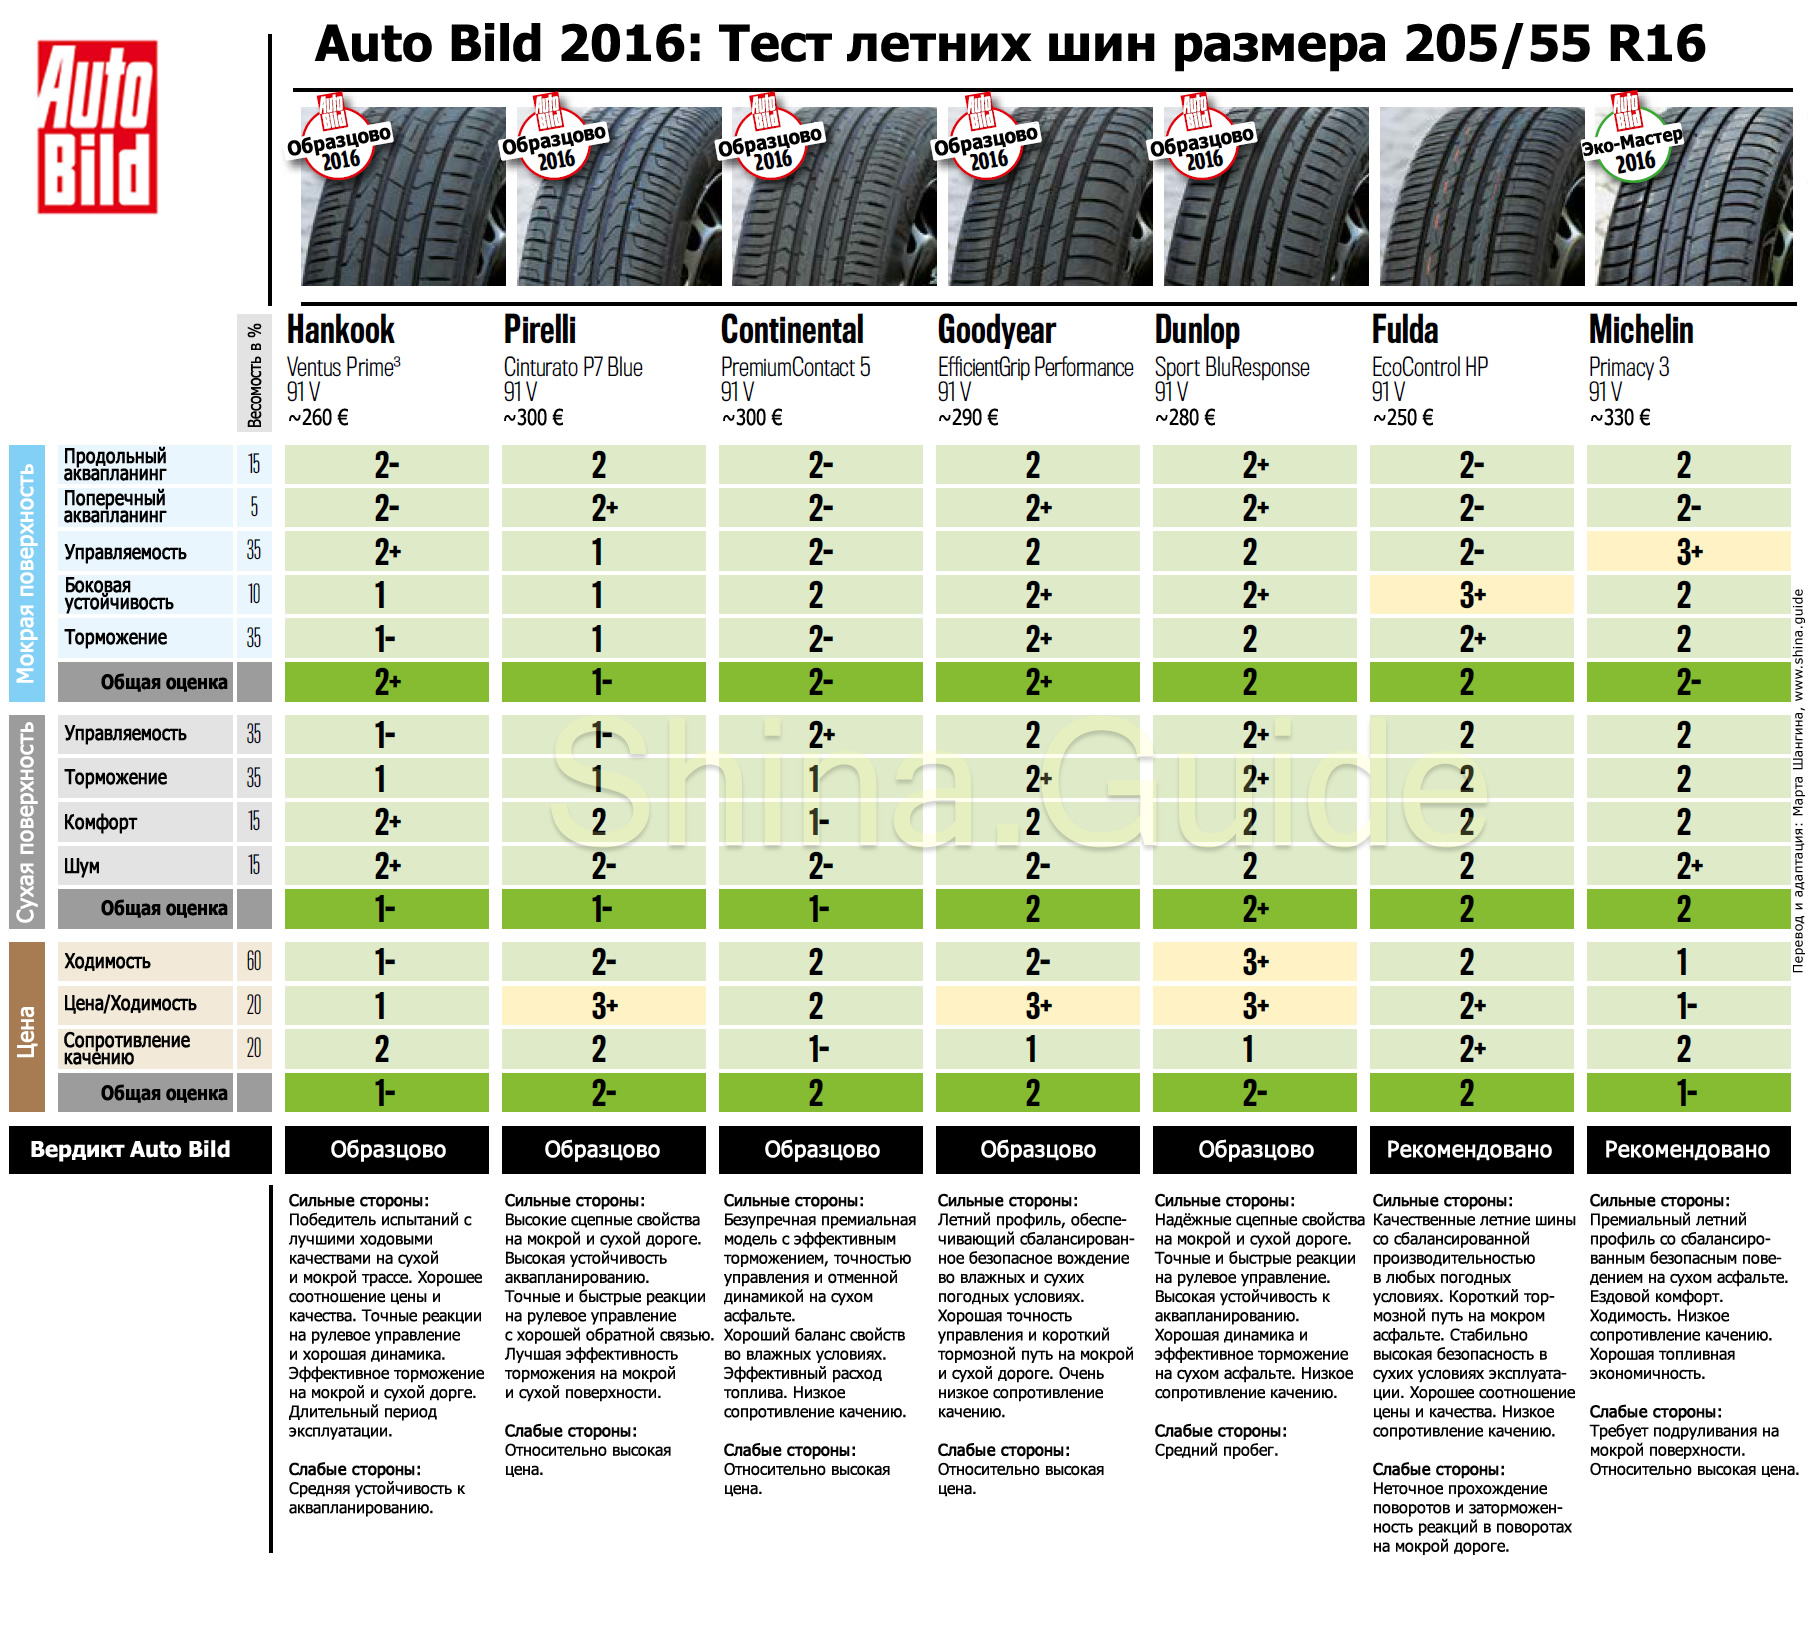 Auto-Bild-2016-summer-tire-205-55-R16-test-results-part-1